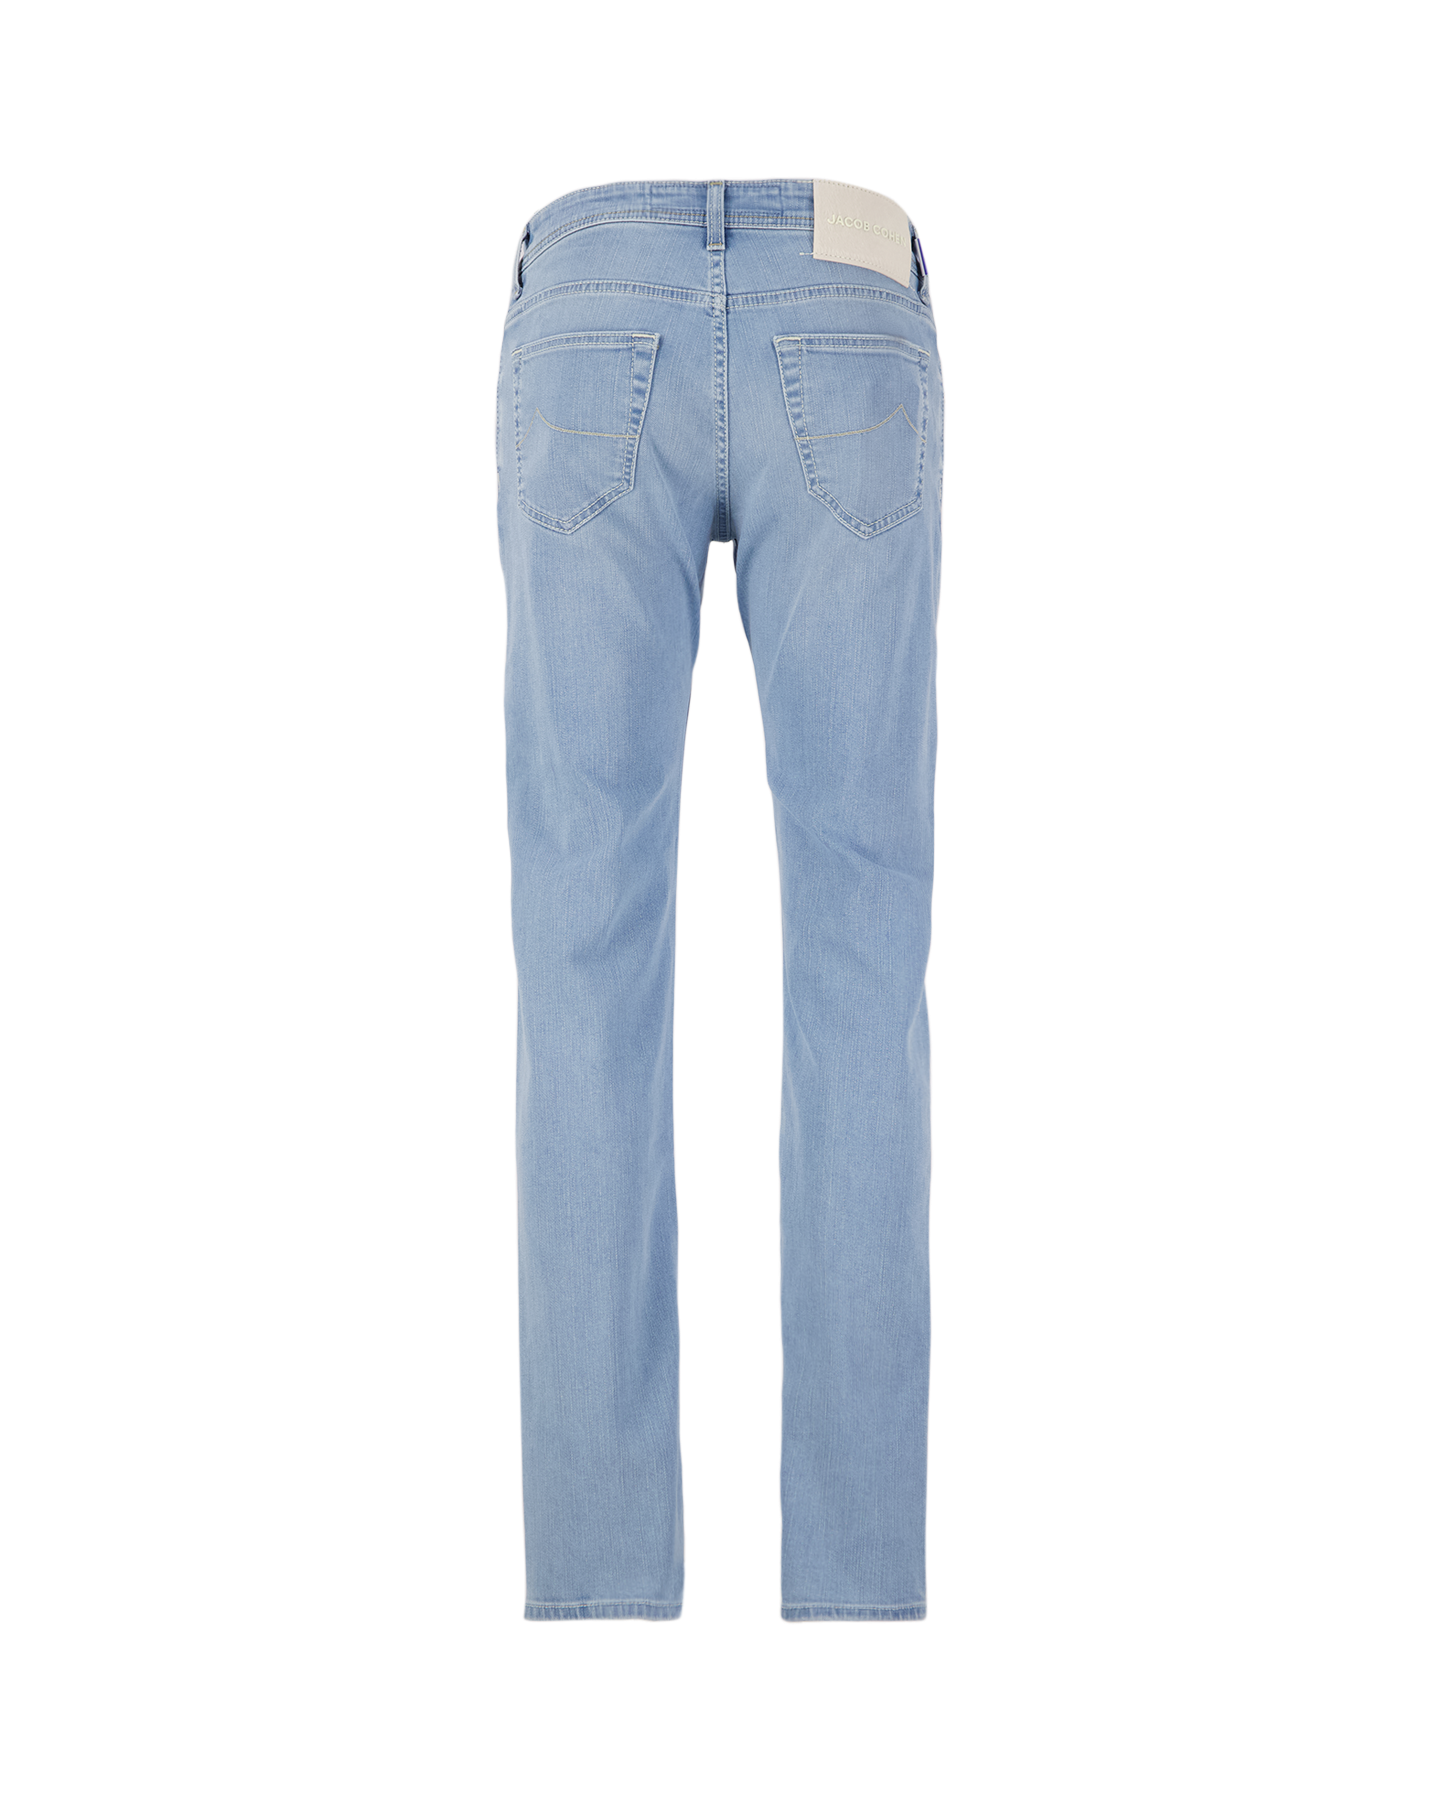 Jacob Cohen Nick Slim Light-Blue Jeans 803D DENIM 2